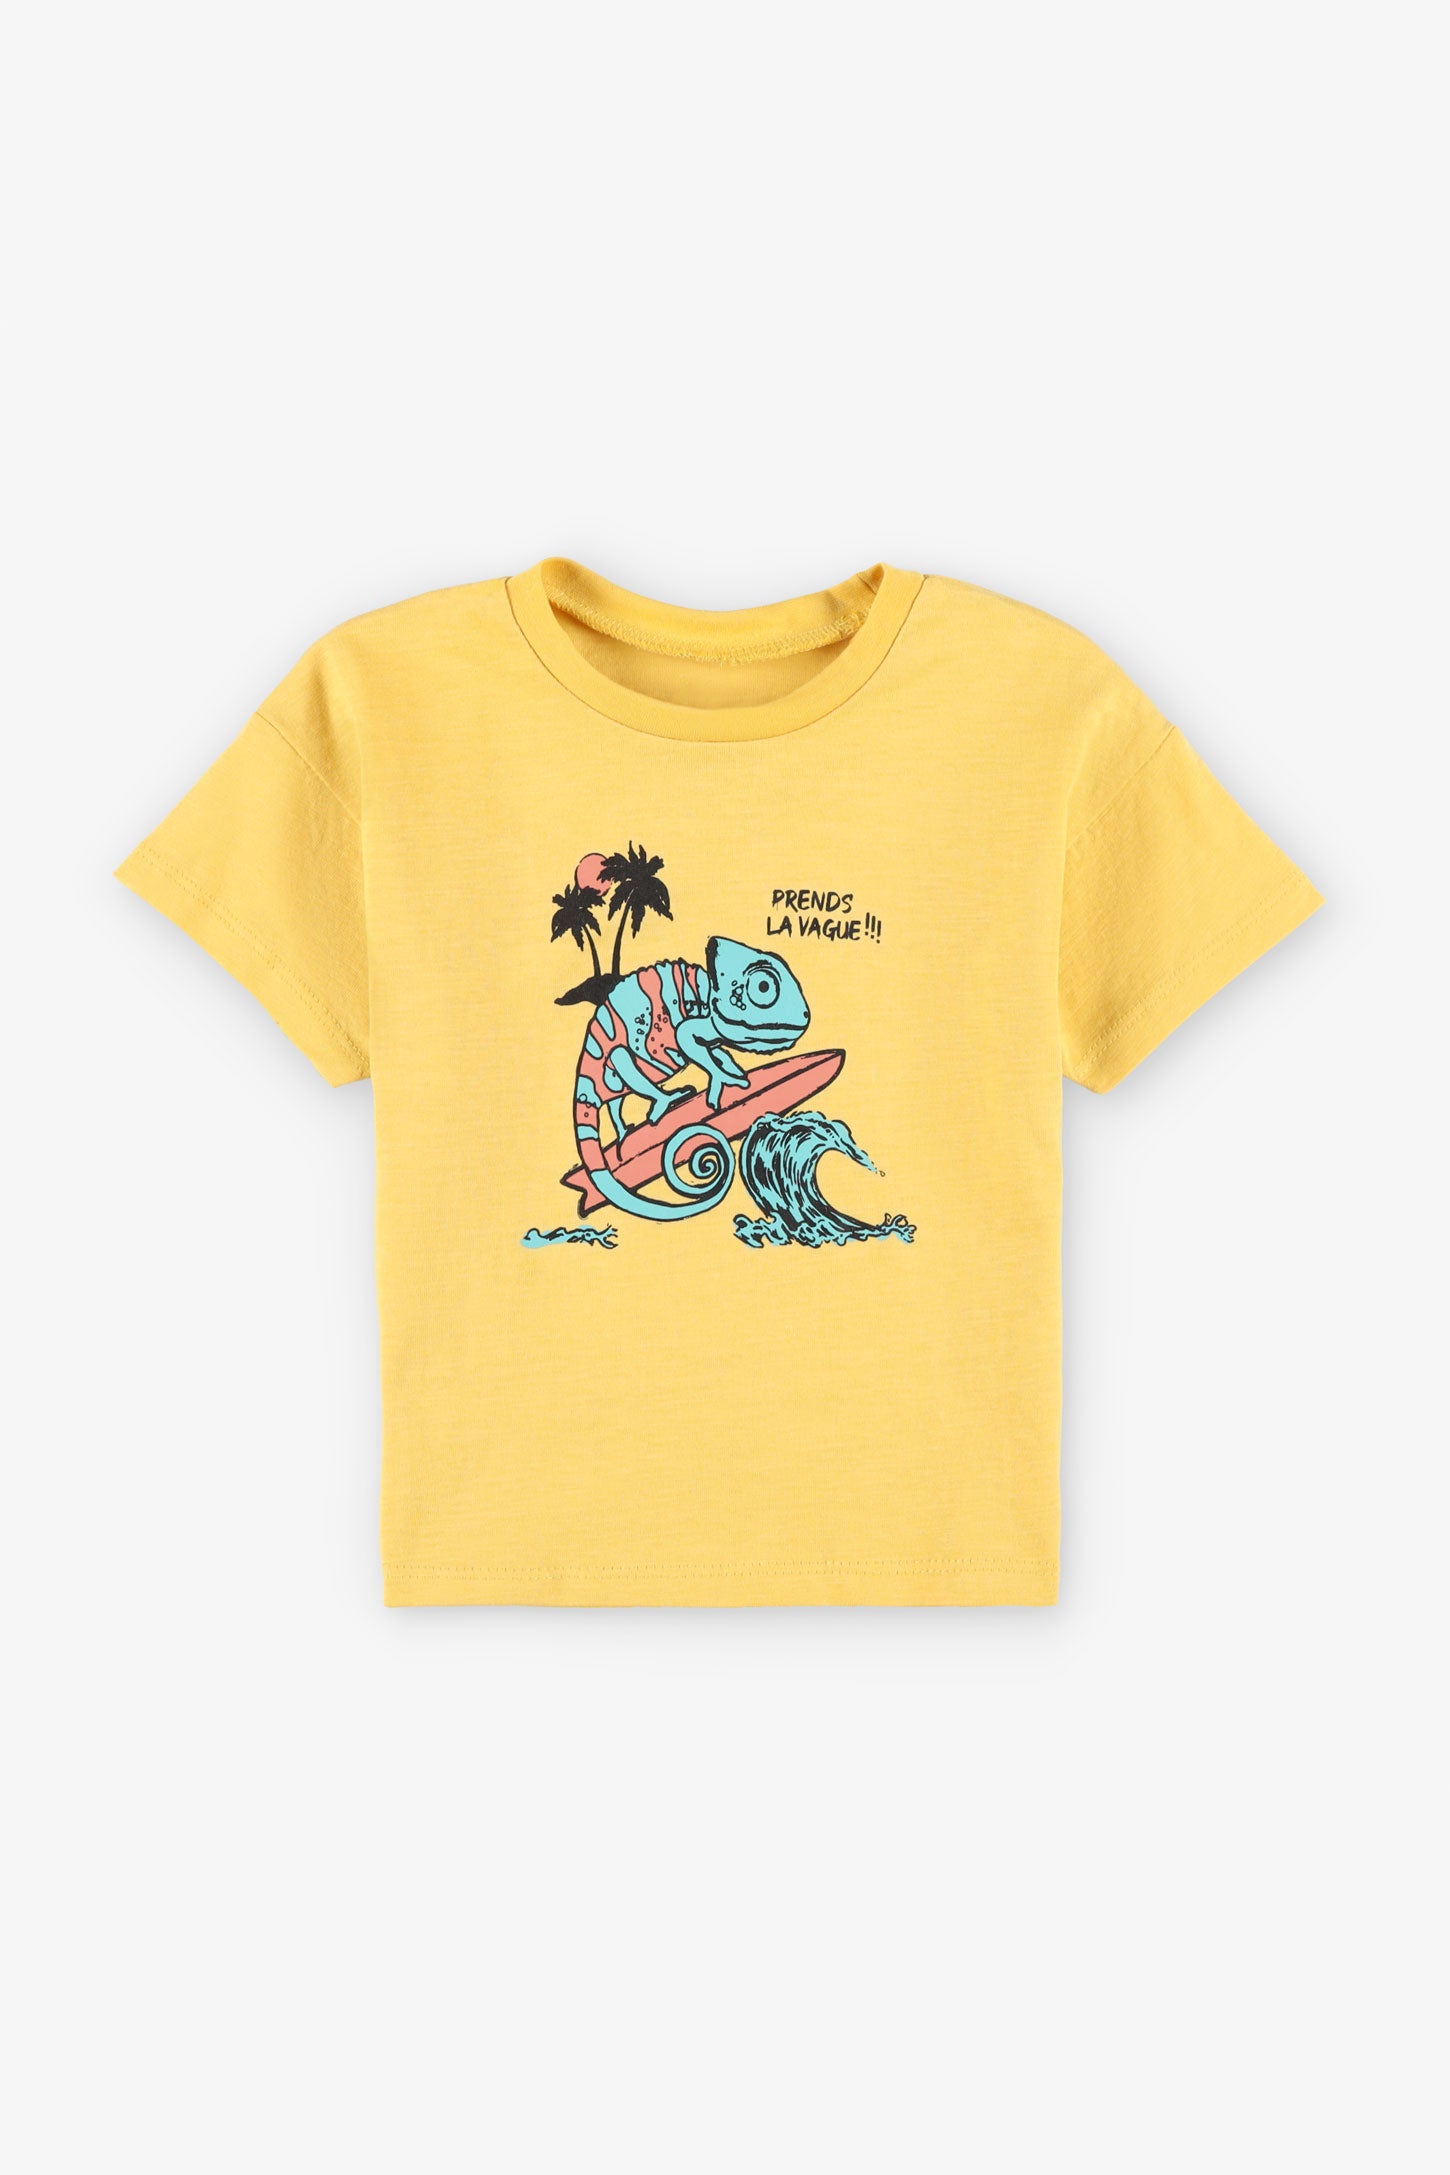 T-shirt coupe ample en coton, 2T-3T, 2/15$ - Bébé garçon && JAUNE